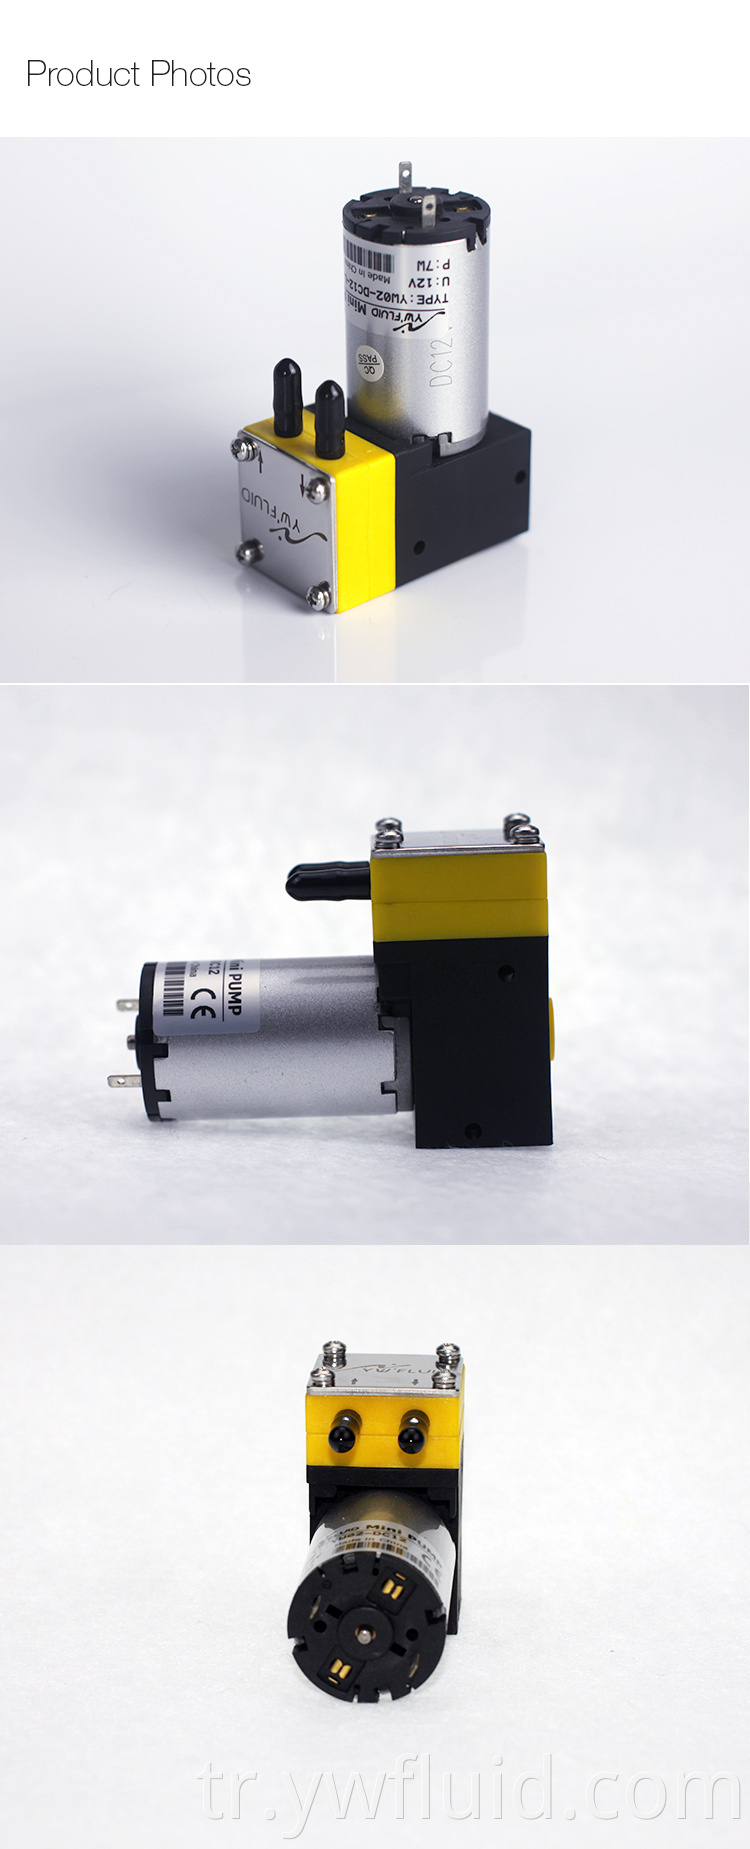 Mürekkep püskürtmeli baskı için kullanılan ywfluid 12V 24V dirençli kimyasal mürekkep pompası